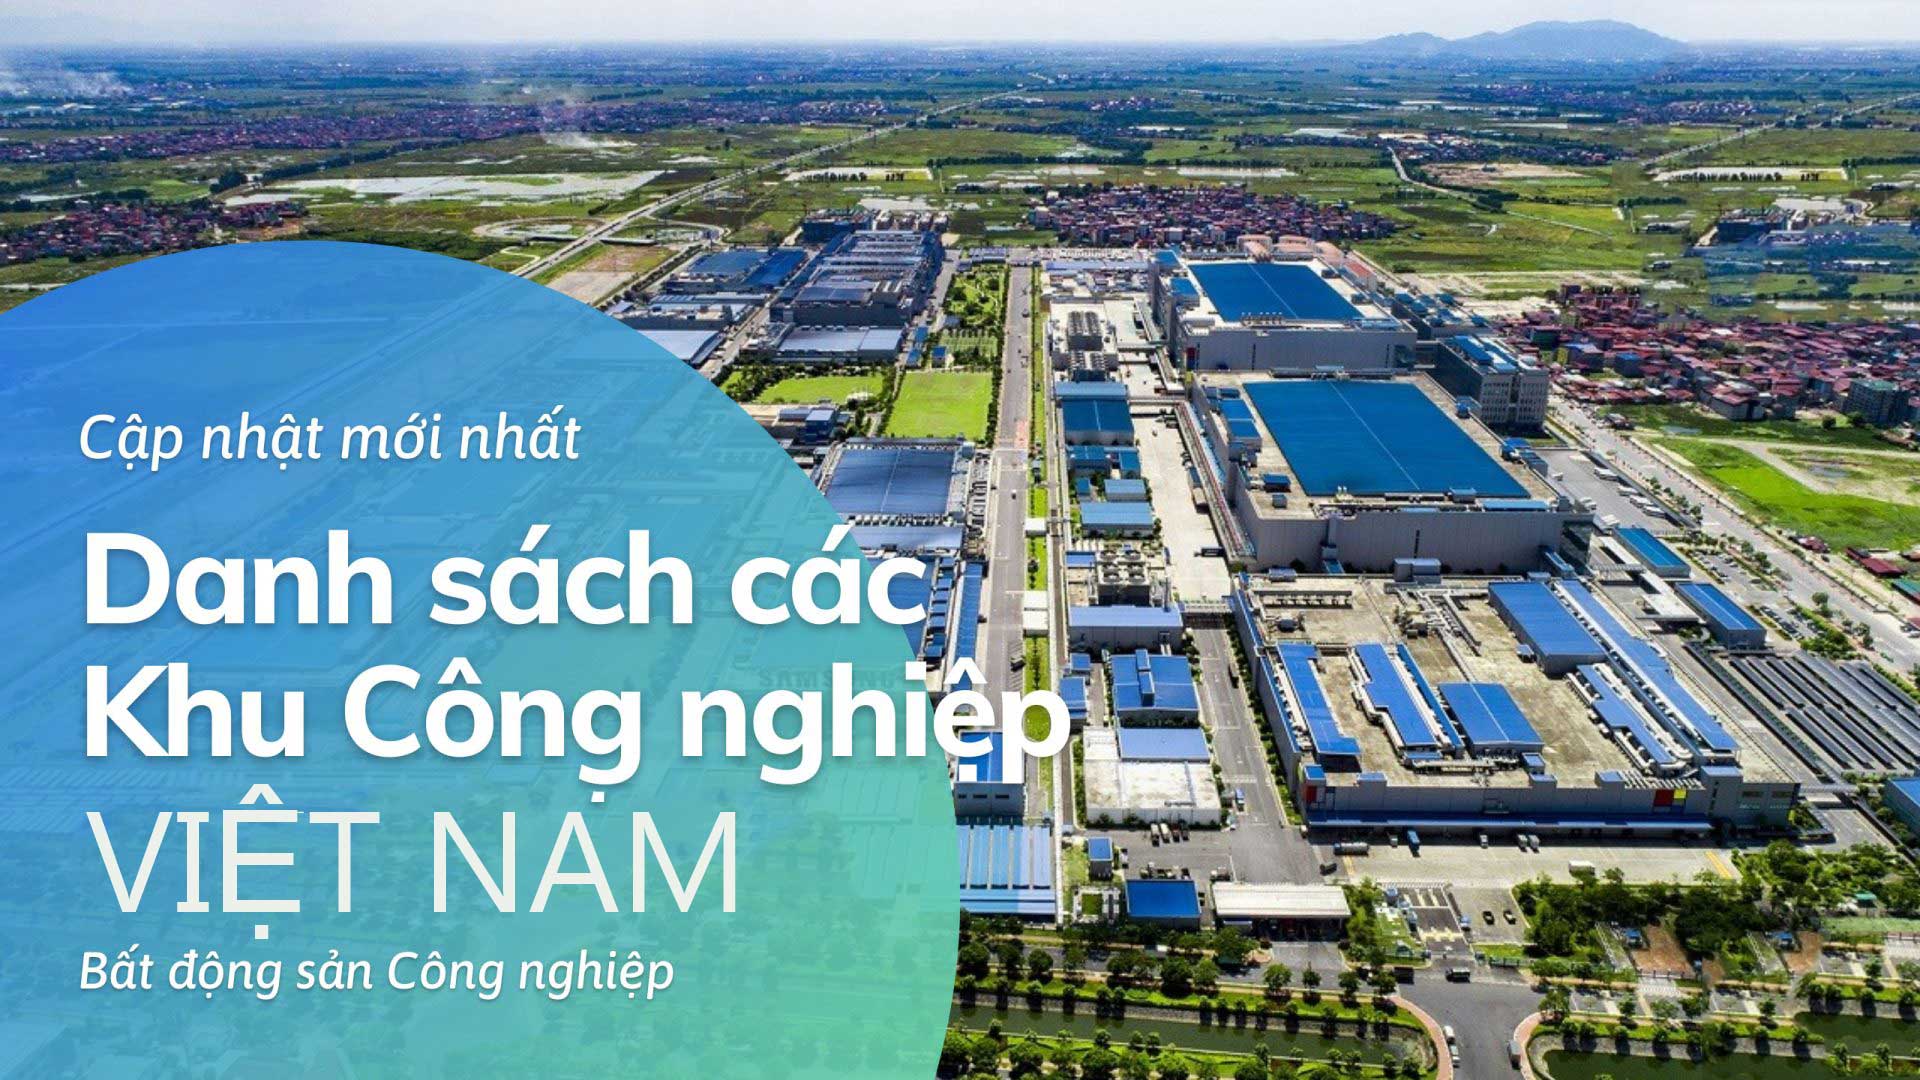 Danh sách các Khu công nghiệp Việt Nam